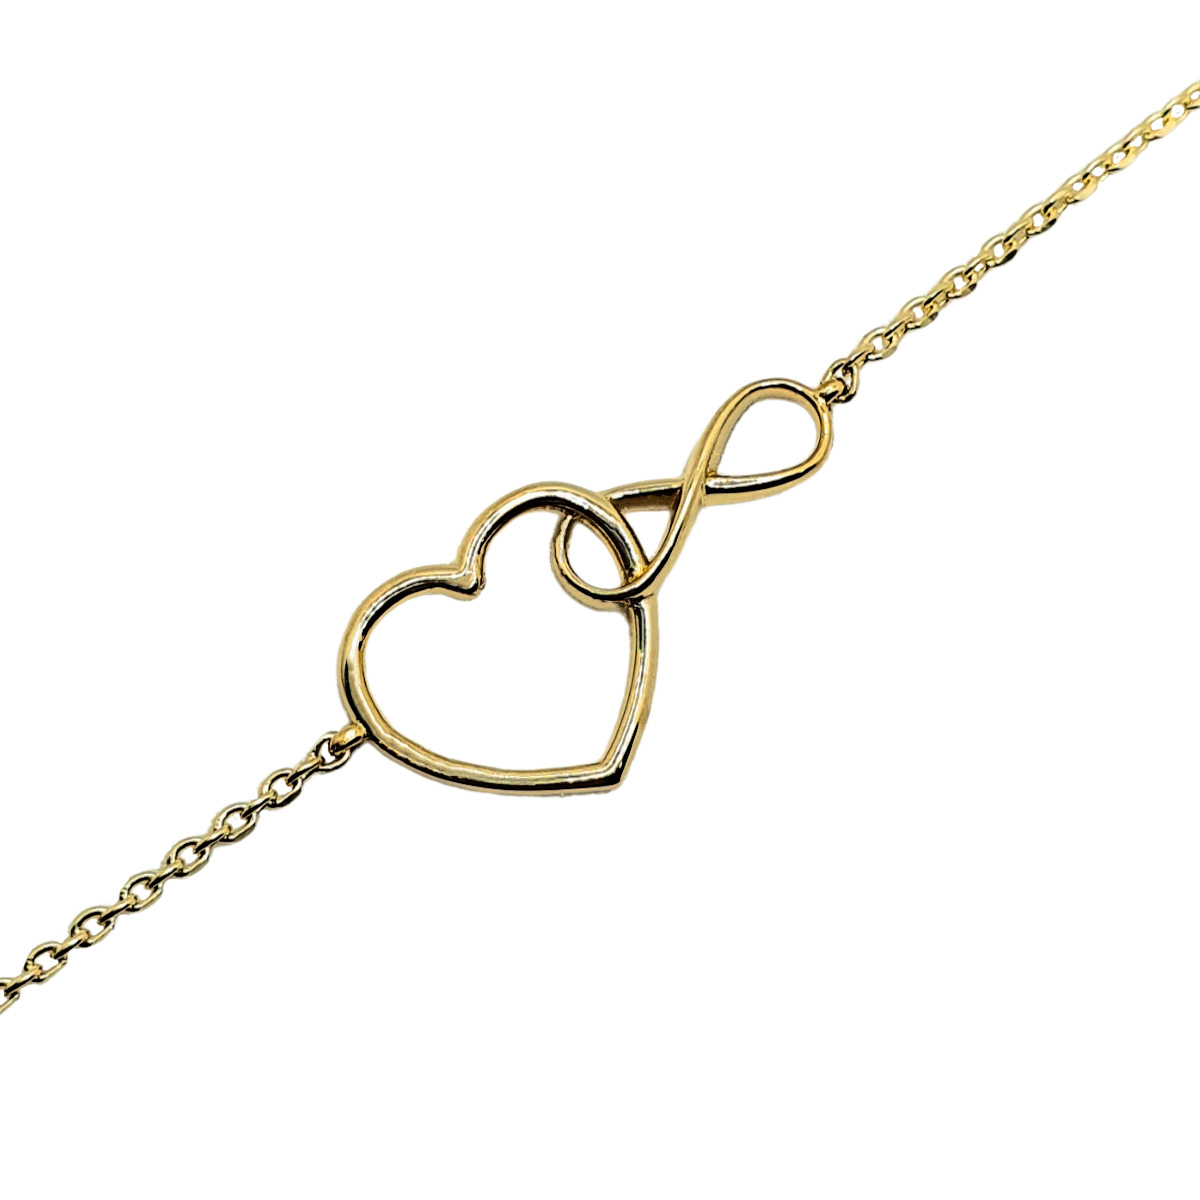 Pulsera corazón infinito de oro 10k de mujer. Incluye certificado y caja de regalo de la joyería